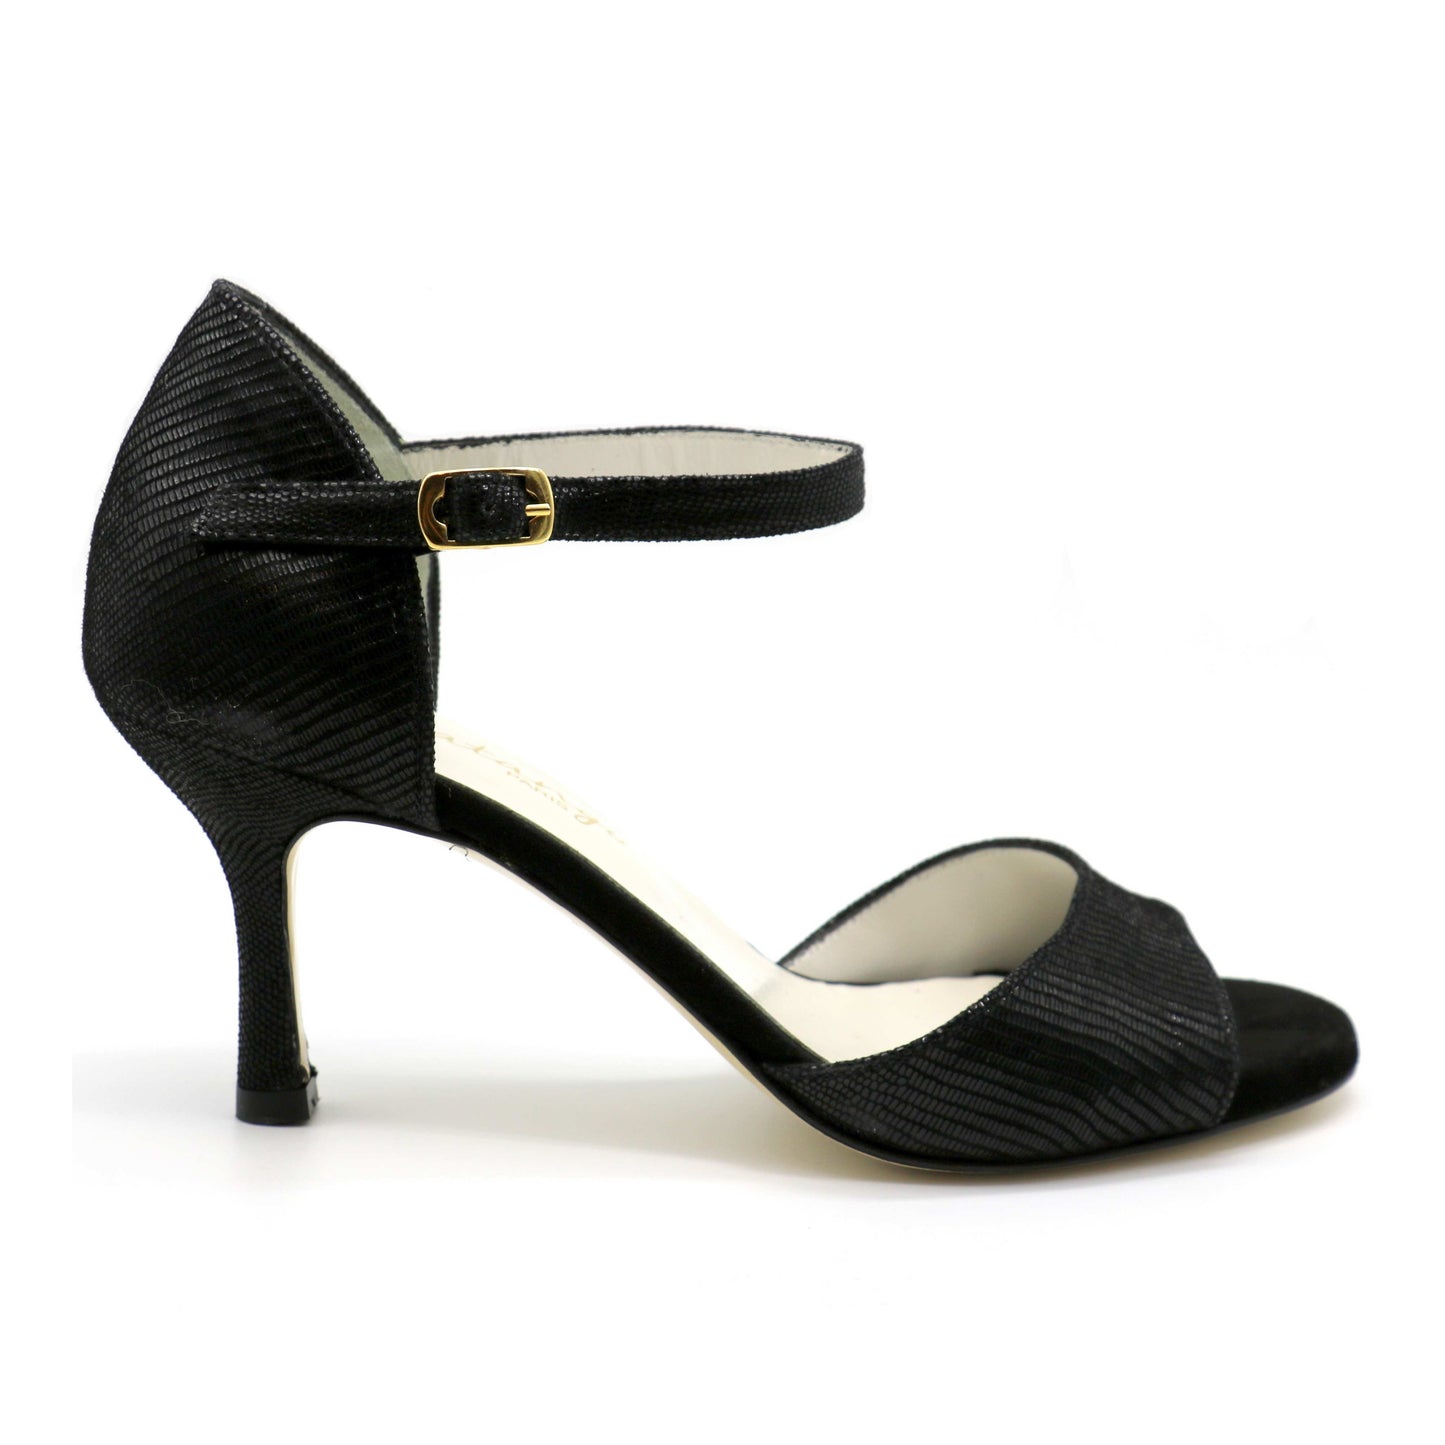 Flor Black leather snake-like heels 7cm